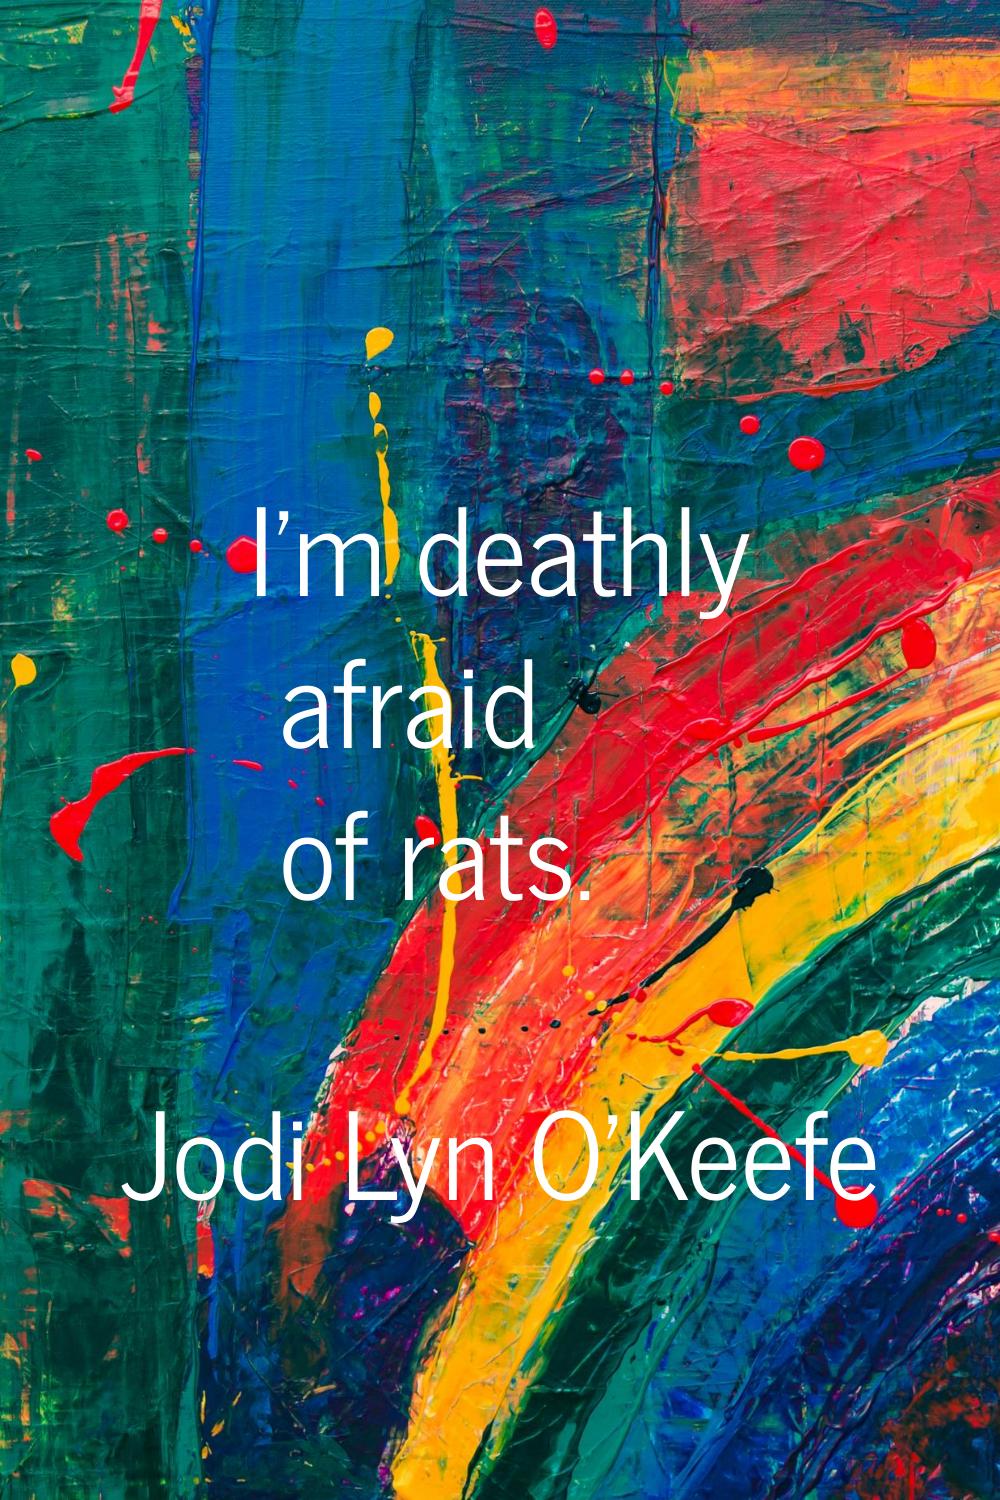 I'm deathly afraid of rats.